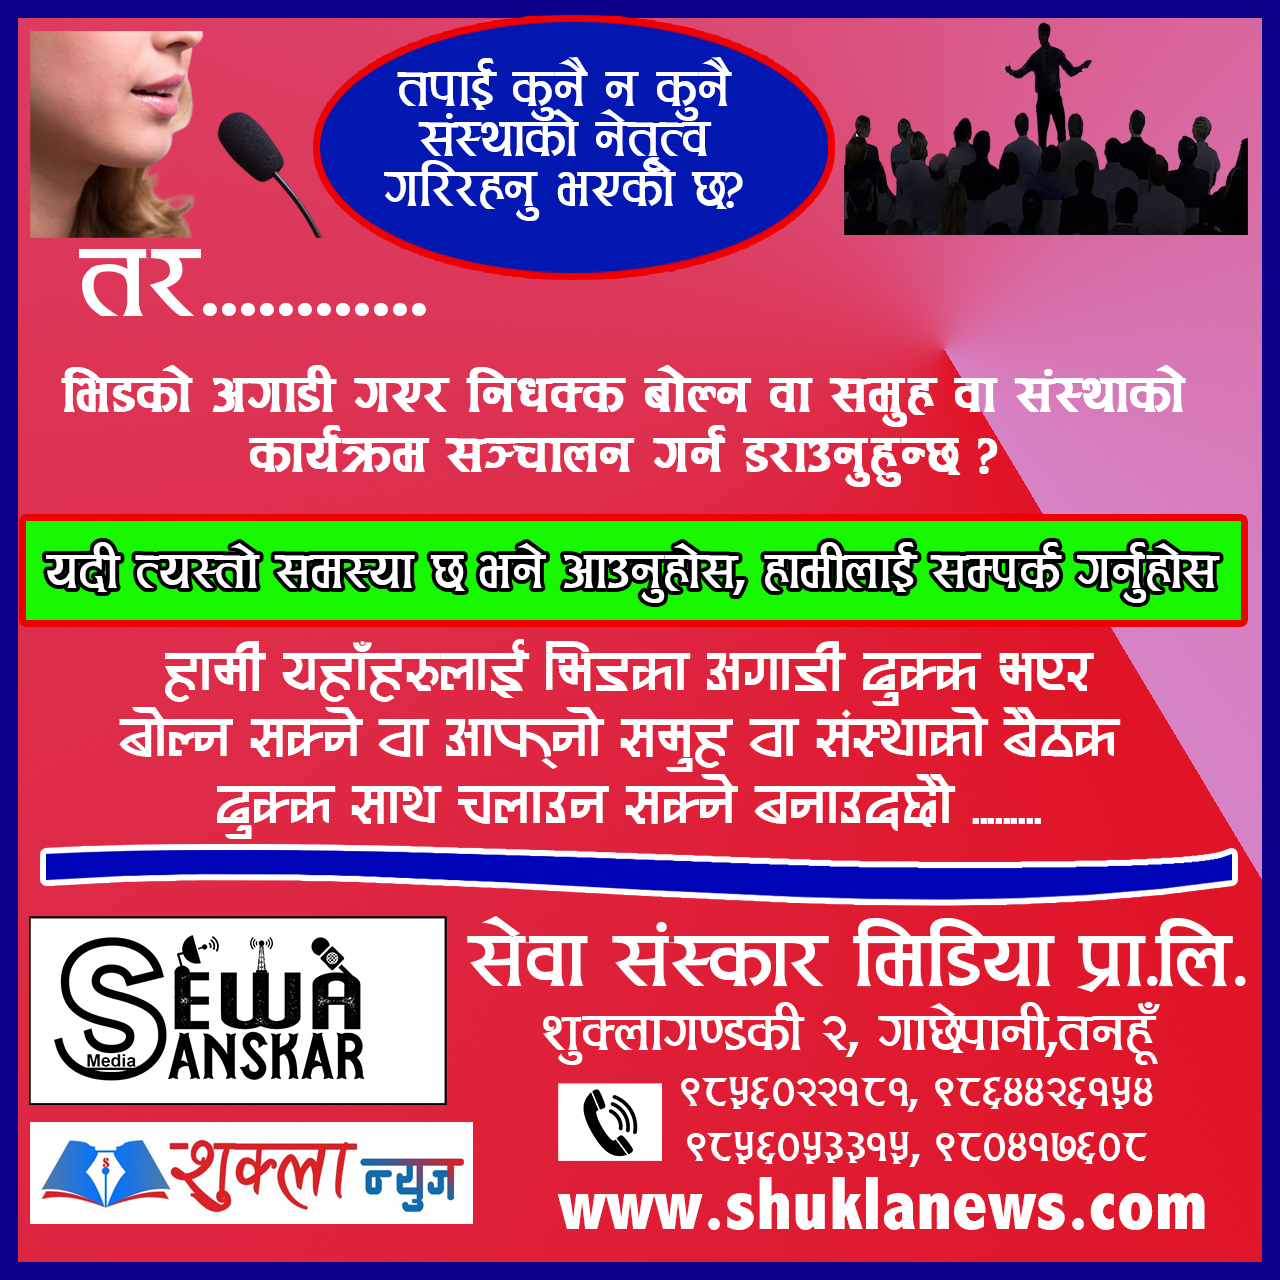 Sewa sanskar Media Shukla News